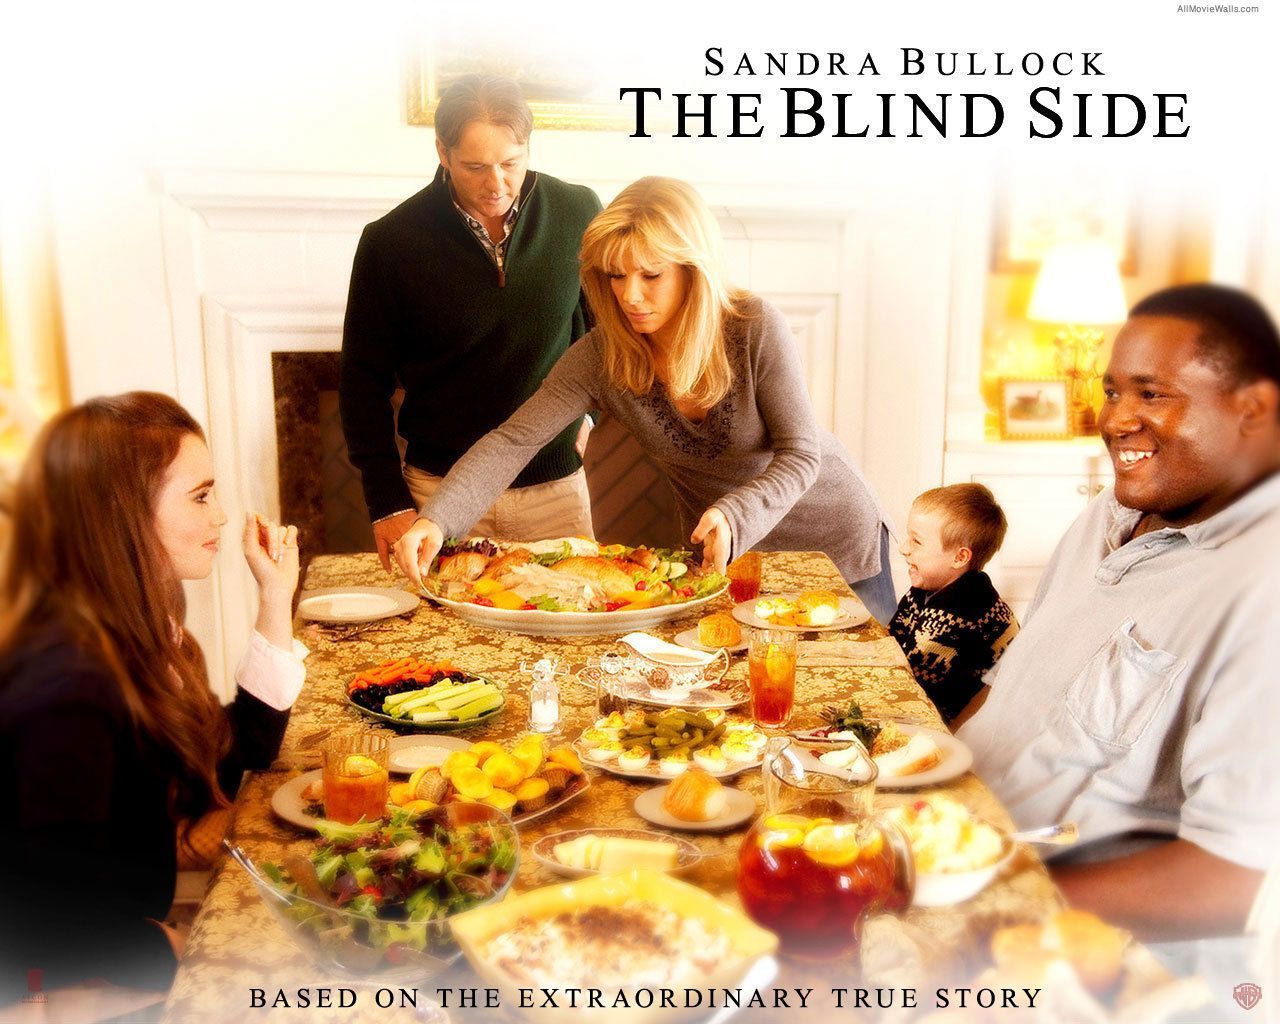 Sandra Bullock: THE BLIND SIDE